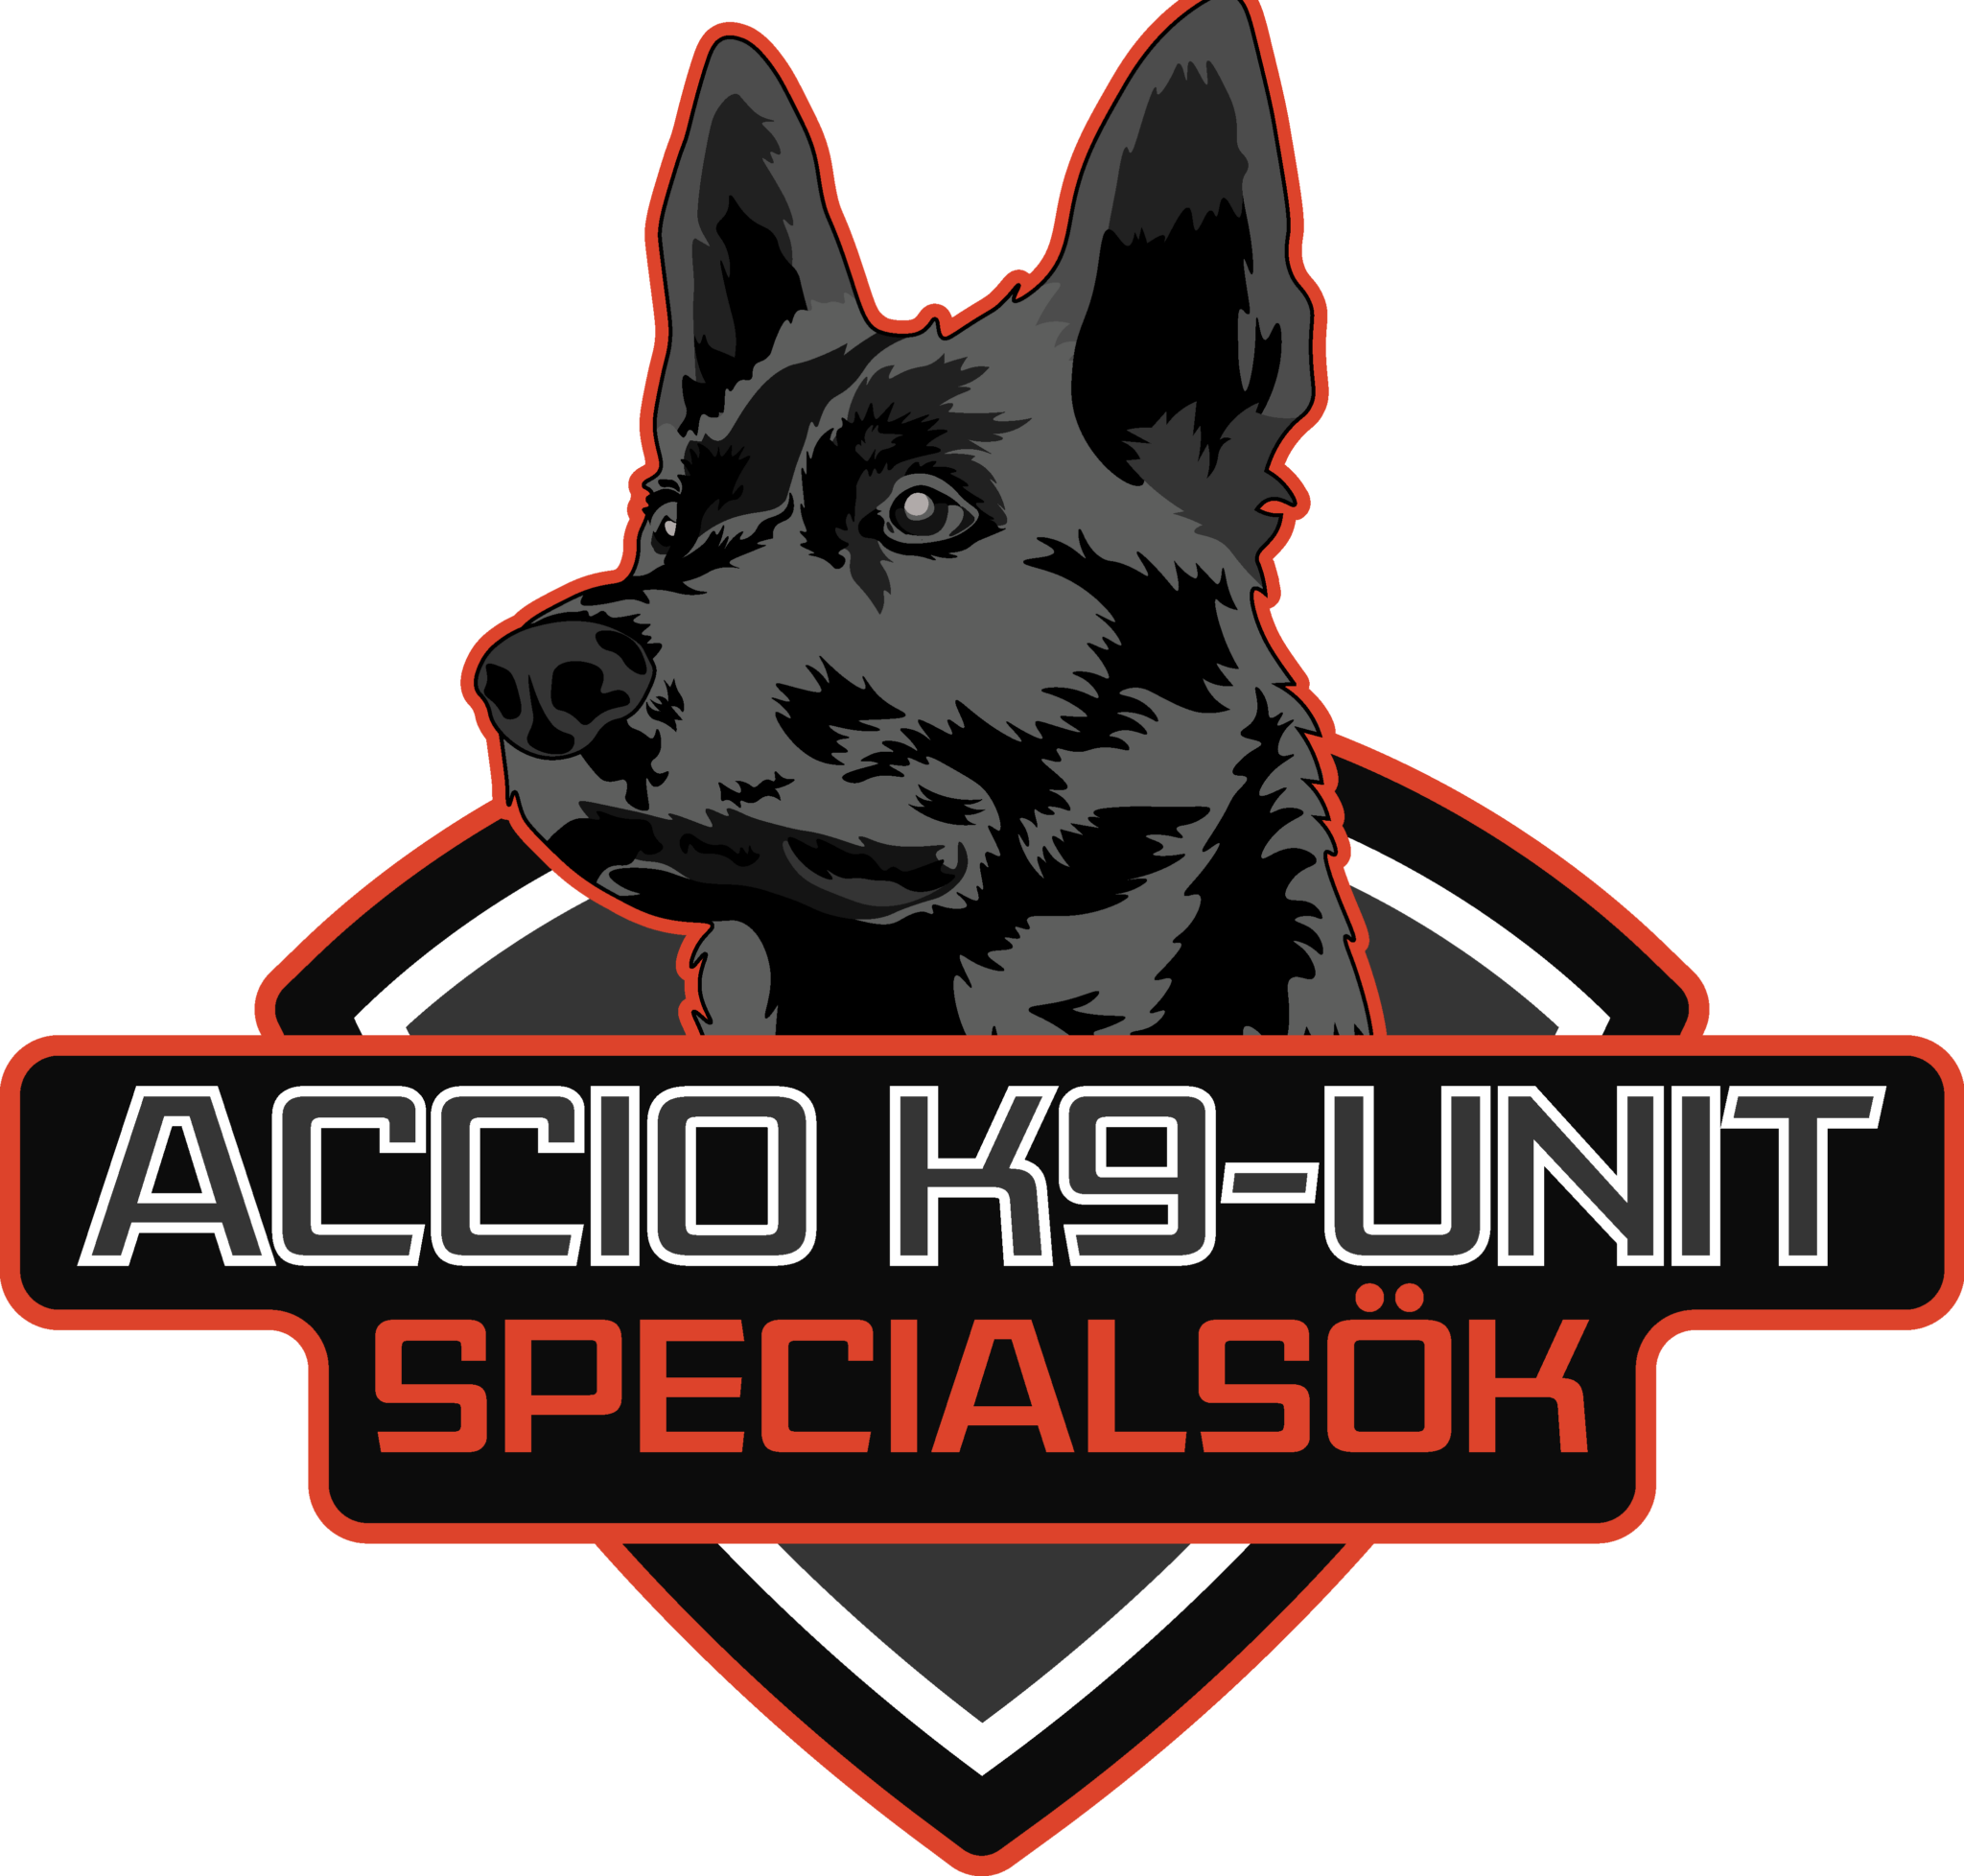 Accio K9